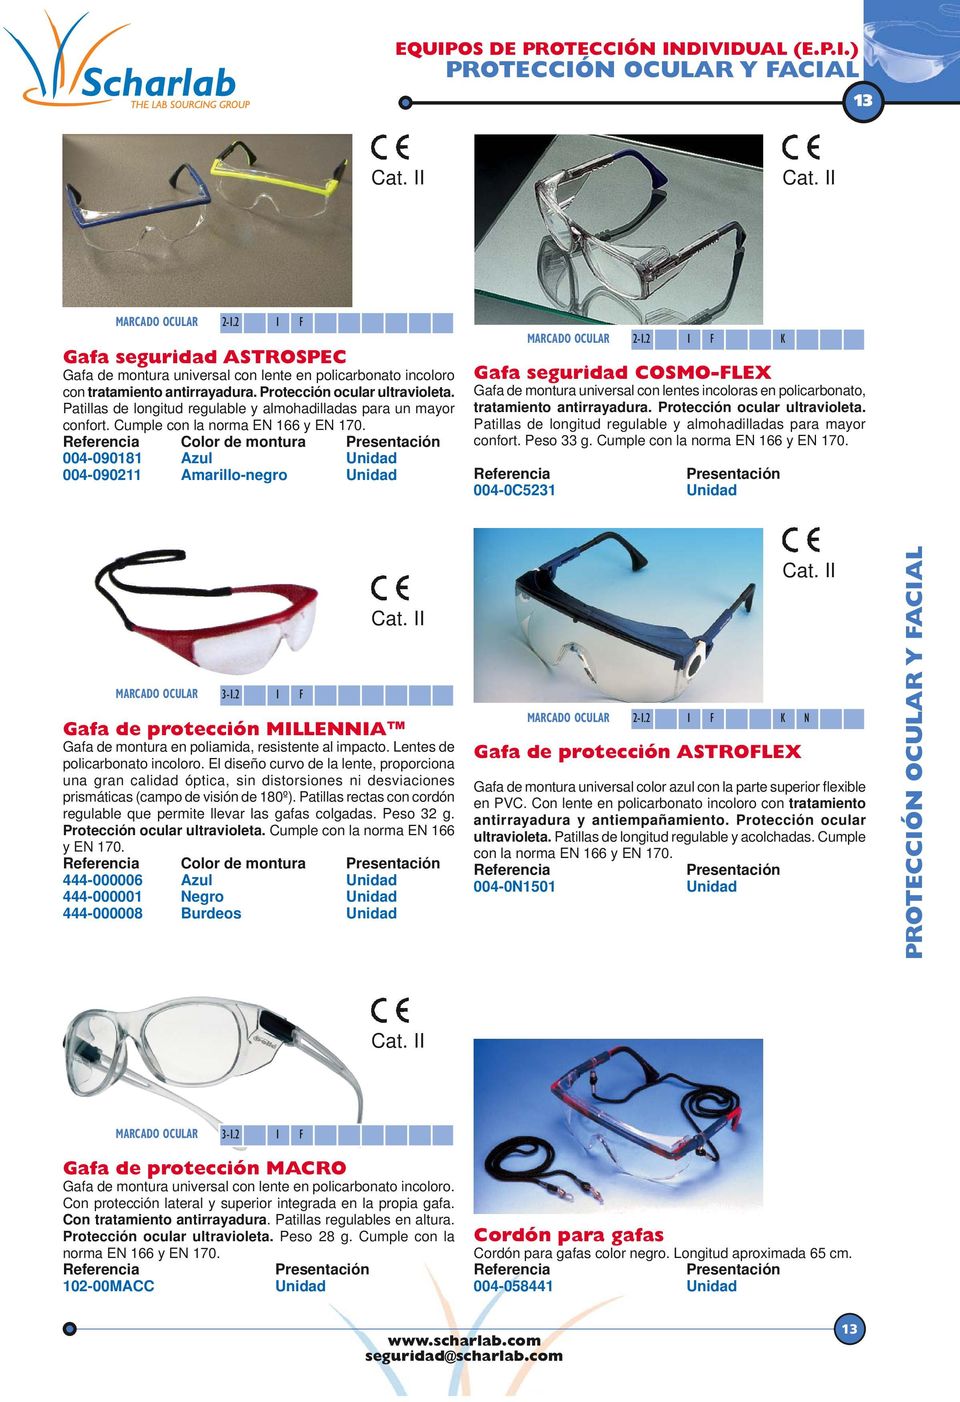 2 1 F K Gafa seguridad COSMO-FLEX Gafa de montura universal con lentes incoloras en policarbonato, tratamiento antirrayadura. Protección ocular ultravioleta.